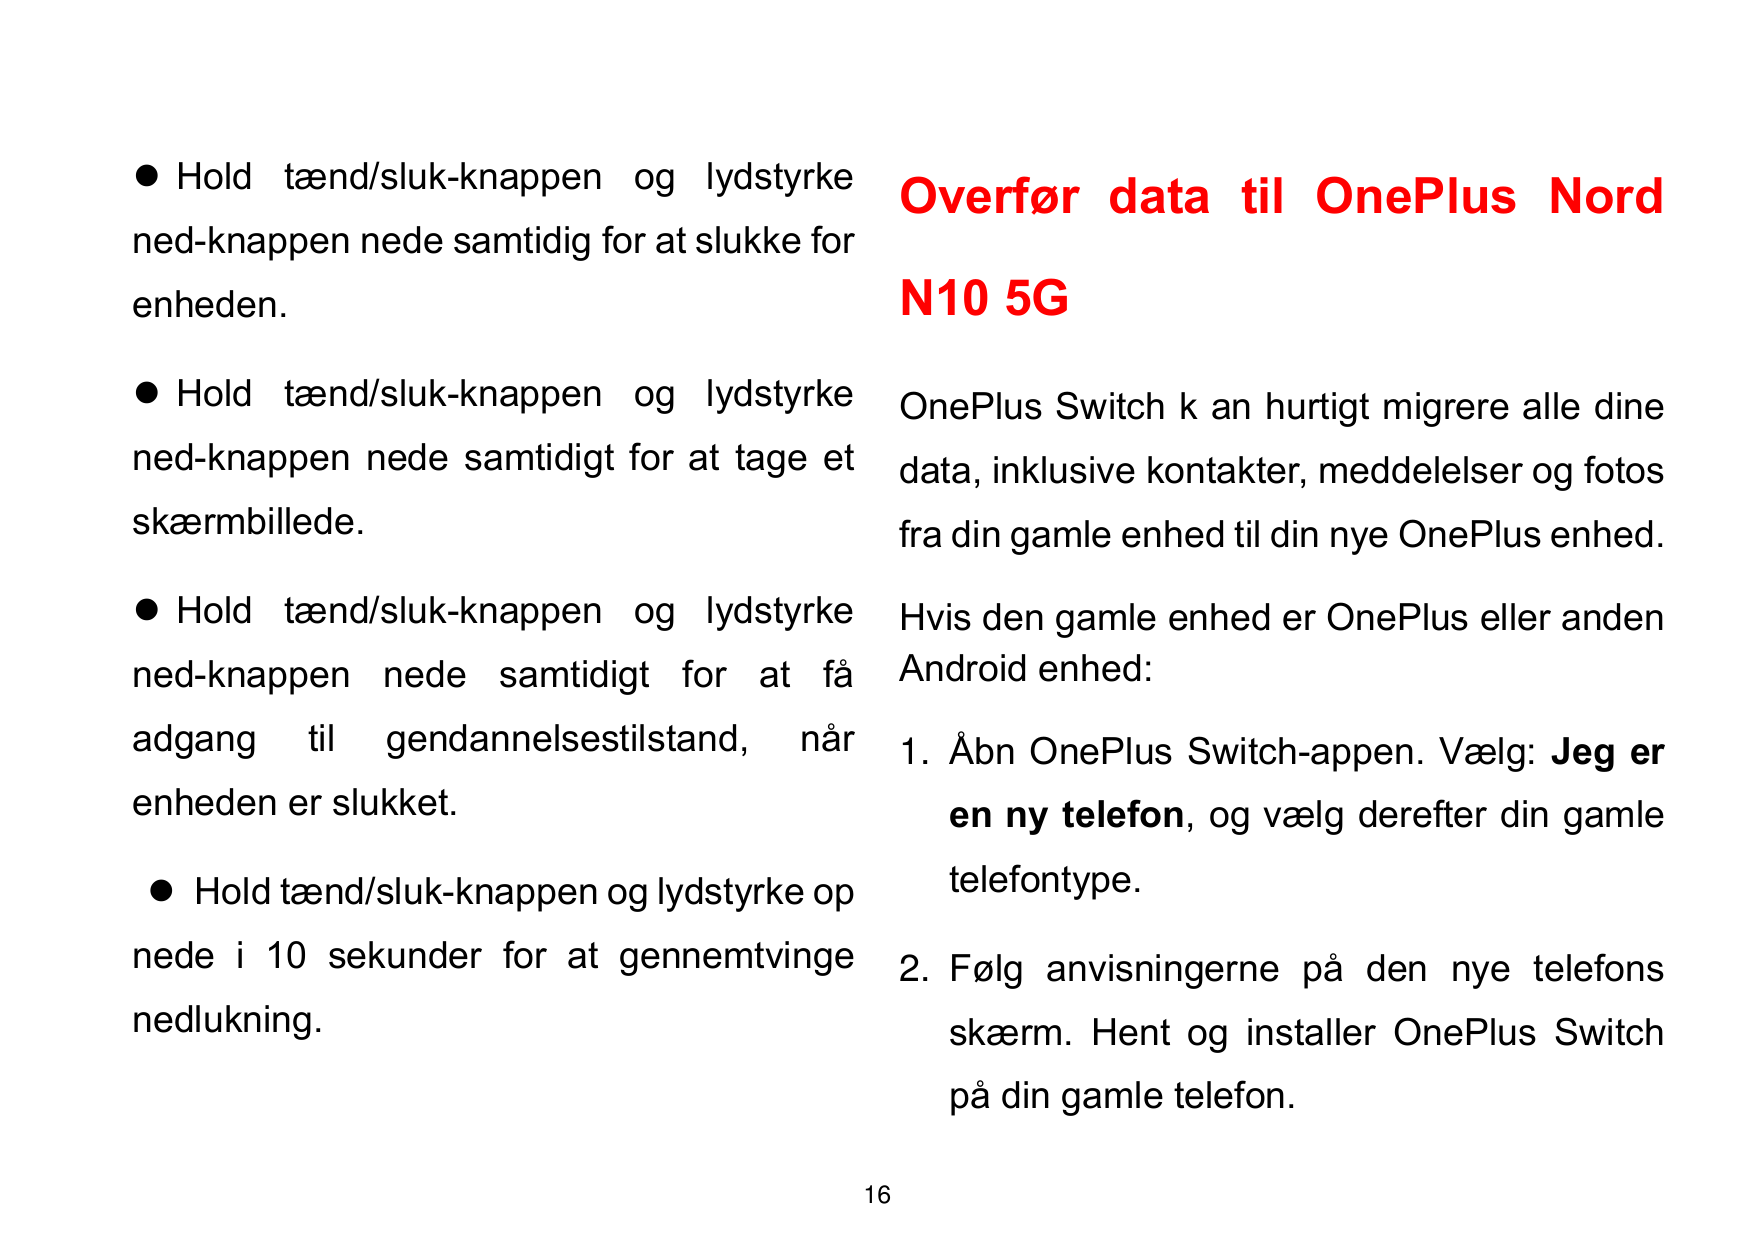 ⚫ Hold tænd/sluk-knappen og lydstyrkeOverfør data til OnePlus Nordned-knappen nede samtidig for at slukke forenheden.N10 5G⚫ Hol